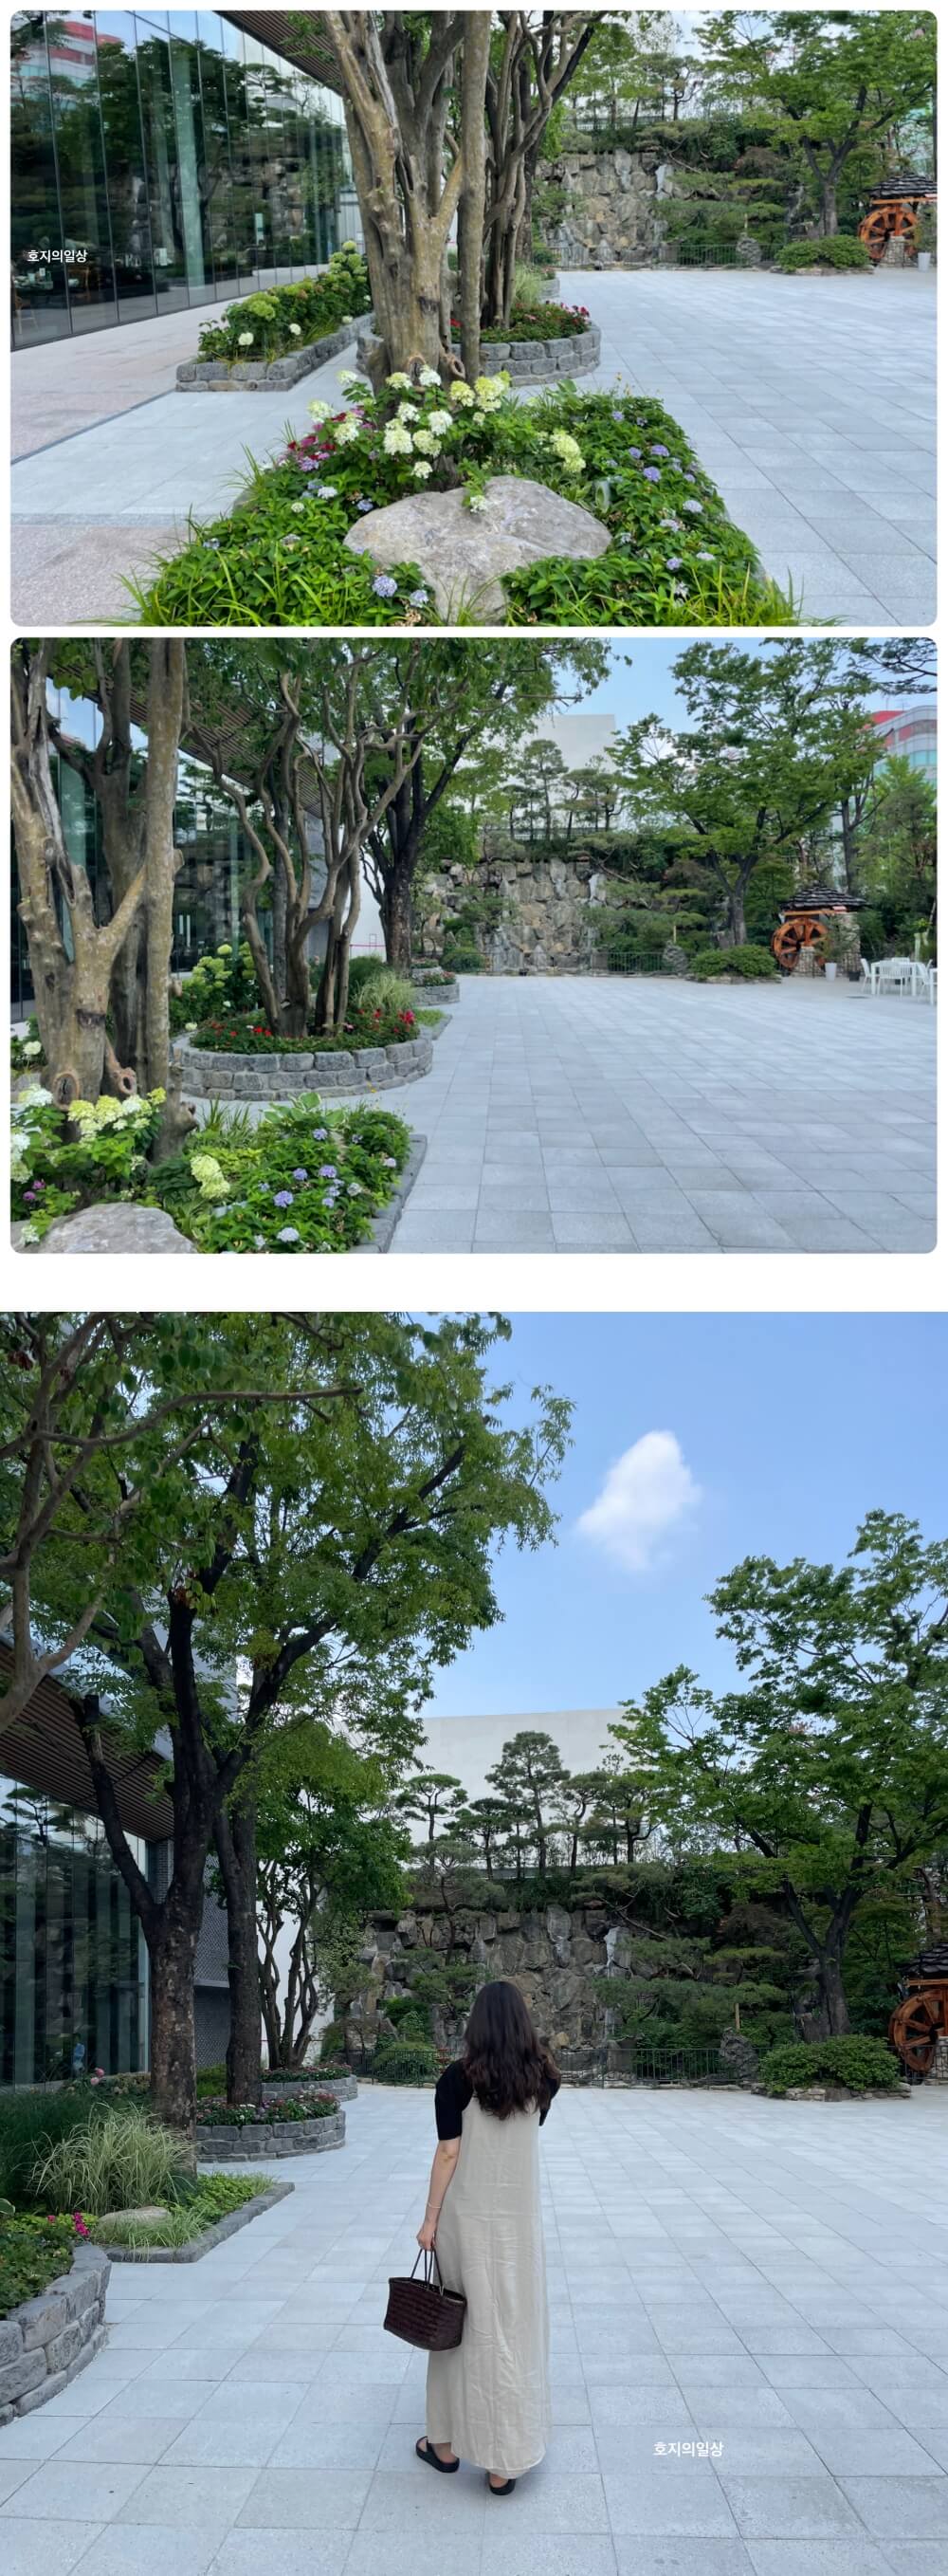 서울 강남 소갈비 맛집 삼원가든 - 매장 정원 모습